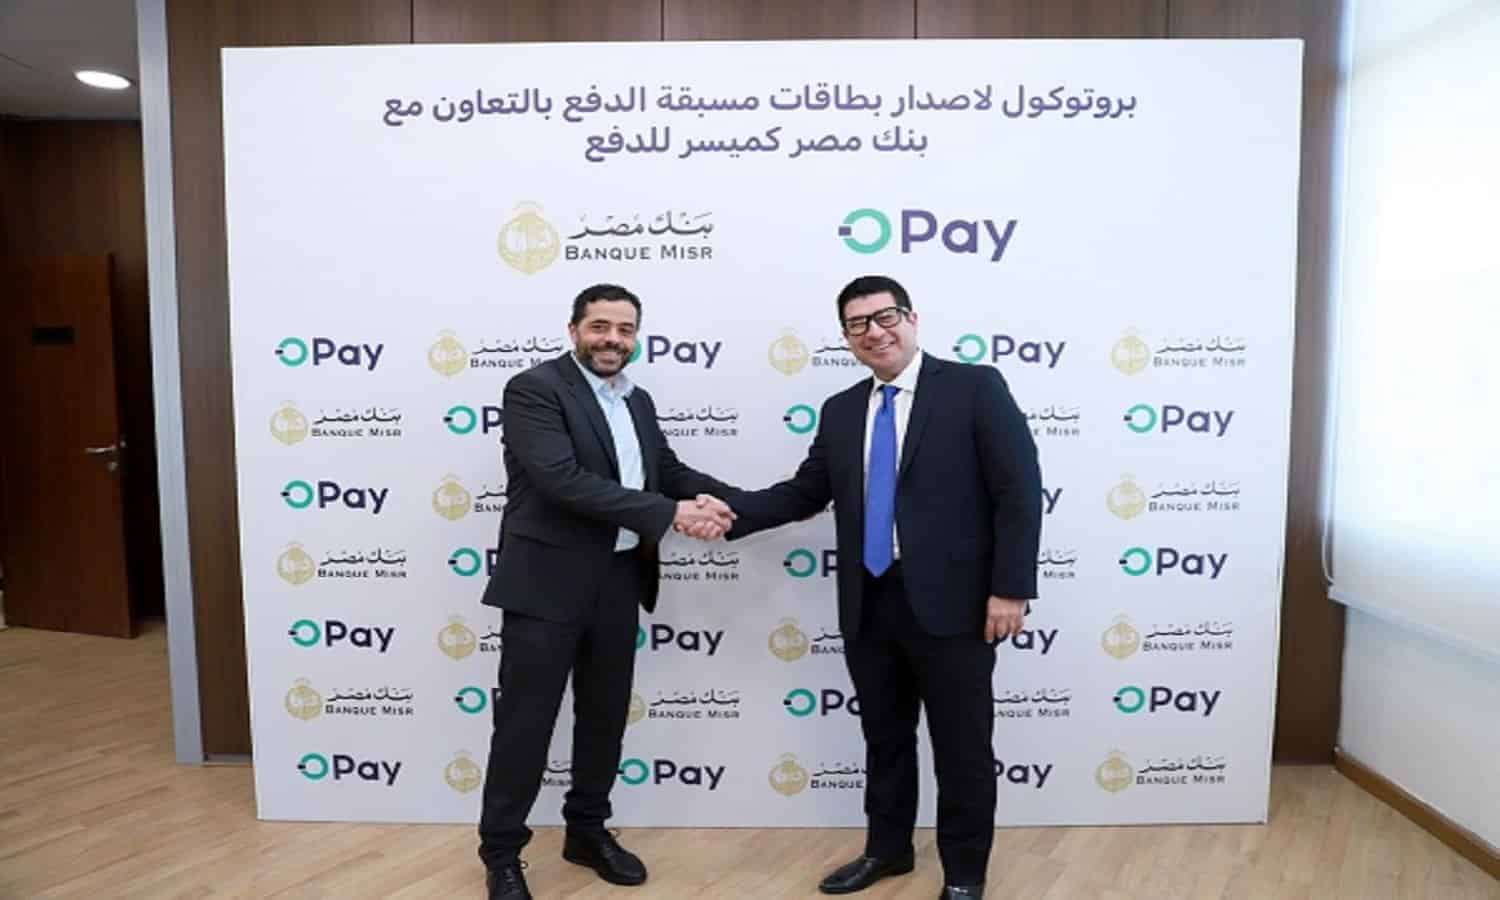 تعاون بين أوباي وبنك مصر لإصدار بطاقة أوباي مسبقة الدفع